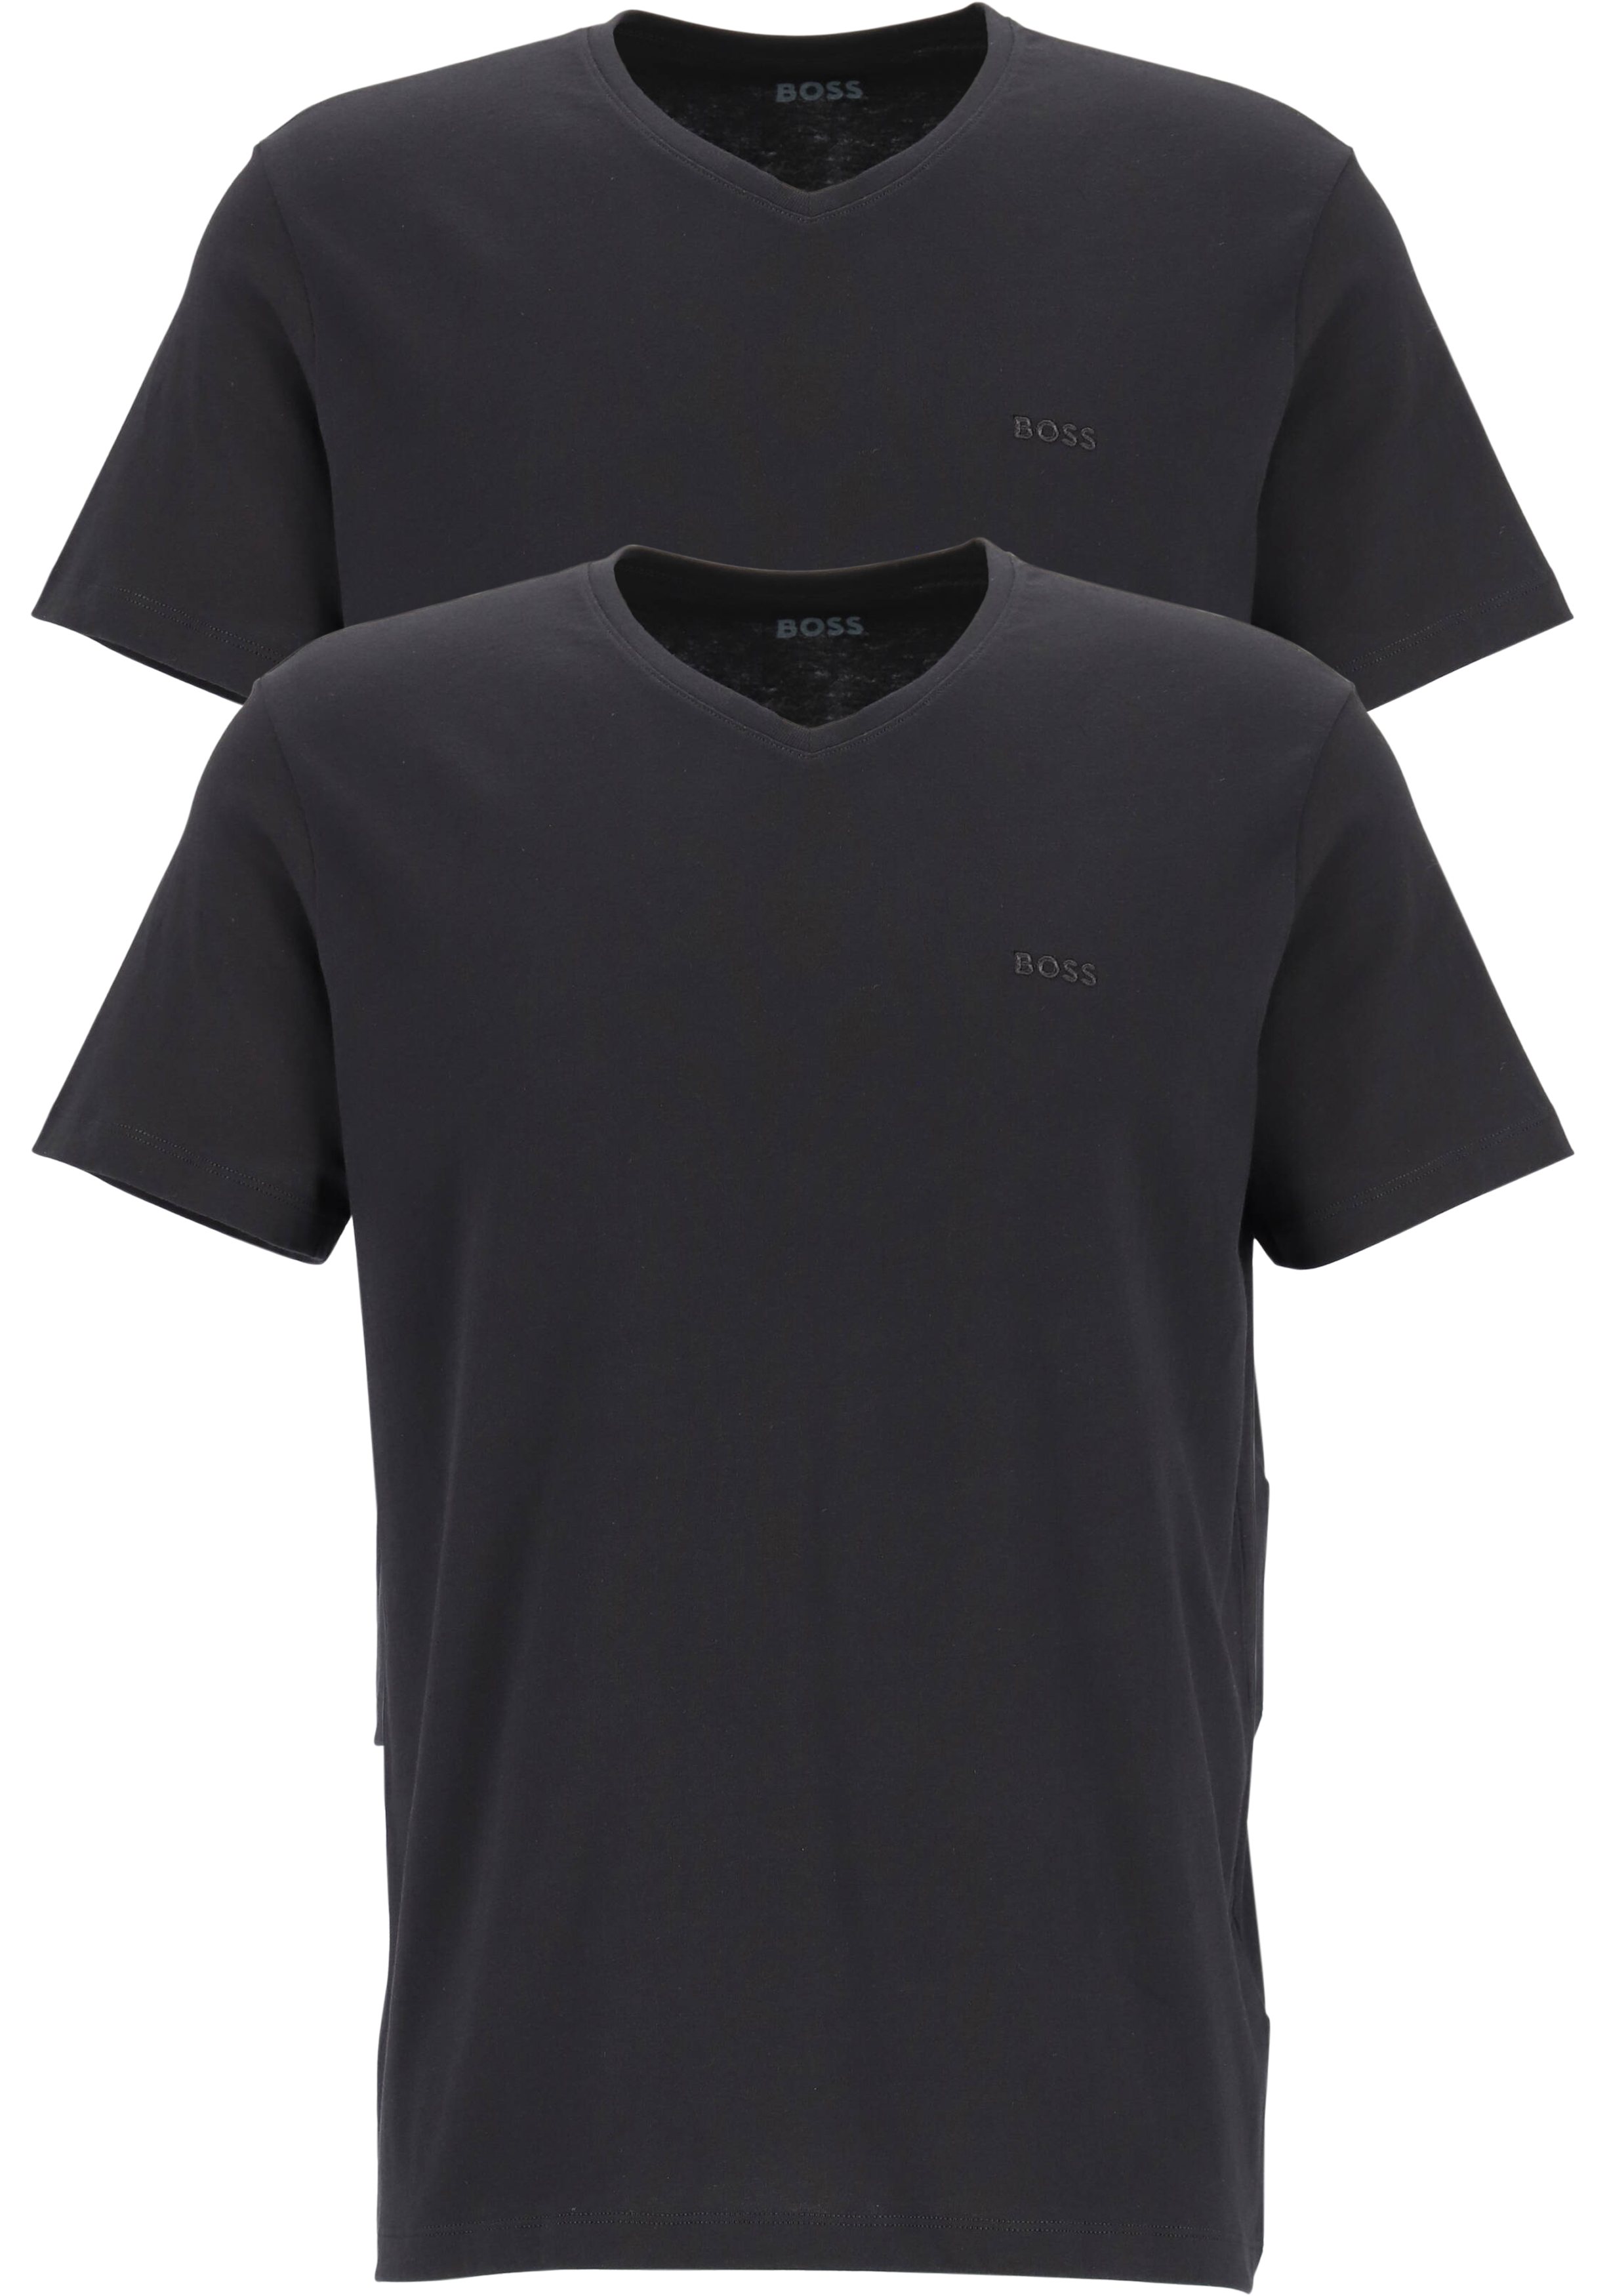 regeren domineren Monografie HUGO BOSS Comfort T-shirts relaxed fit (2-pack), heren T-shirts V-hals,...  - Shop de nieuwste voorjaarsmode